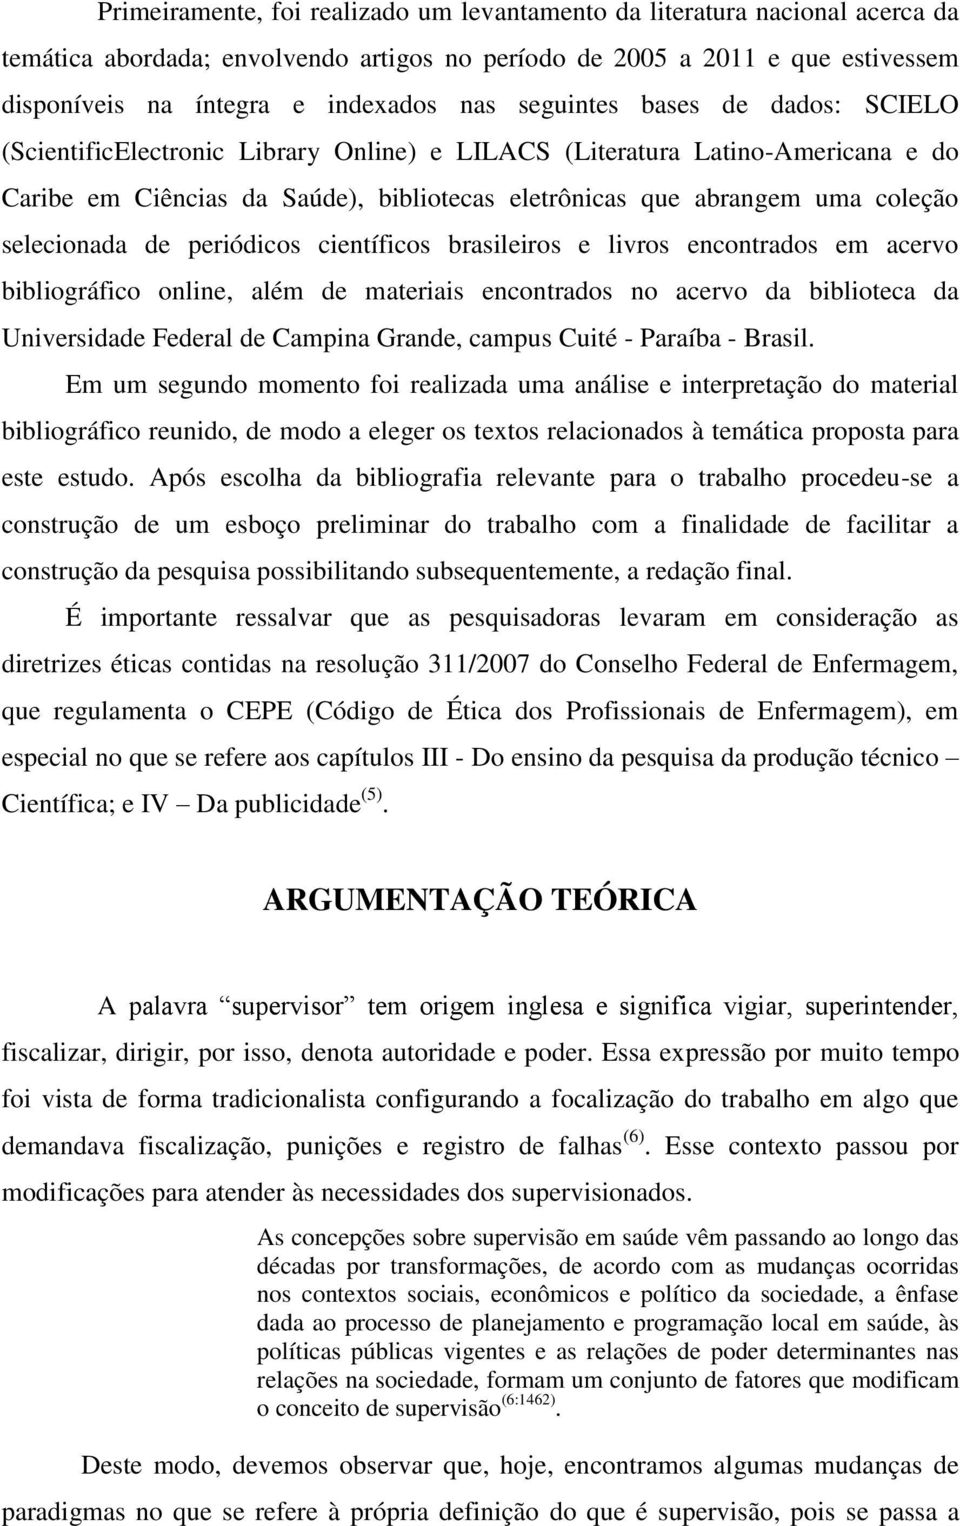 selecionada de periódicos científicos brasileiros e livros encontrados em acervo bibliográfico online, além de materiais encontrados no acervo da biblioteca da Universidade Federal de Campina Grande,